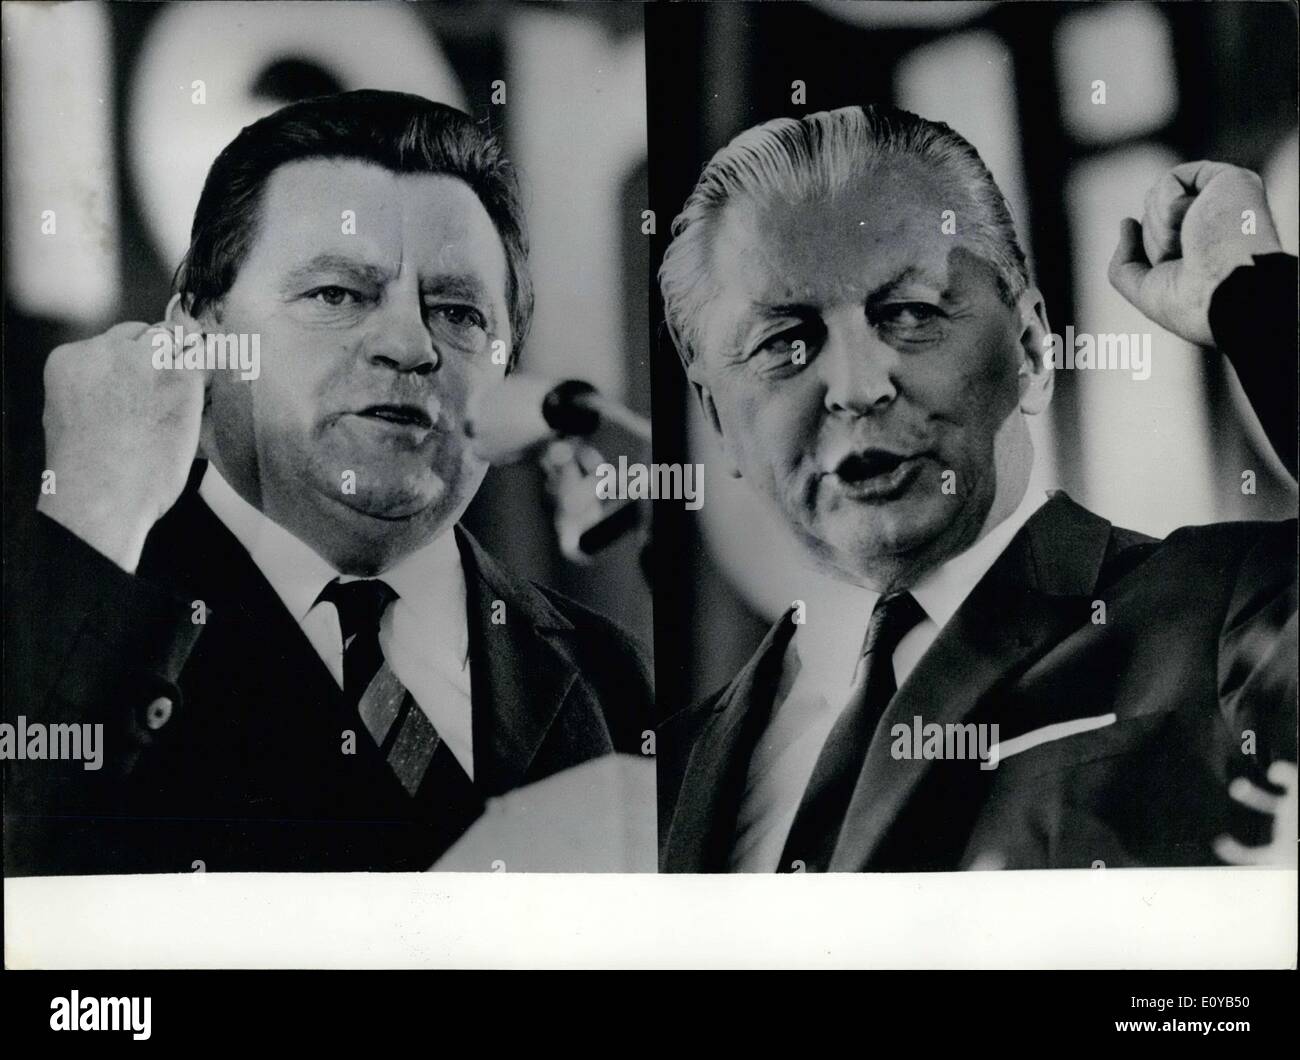 Lug. 16, 1969 - Elezioni in Germania. I partiti tedeschi hanno cominciato la loro battaglia il 28 settembre 1969. Incontri elettorali sono attualmente presenti nella maggior parte delle grandi città tedesche. Nel corso di quelle riunioni di alti funzionari di ciascuna delle parti, come cancelliere Kiesinger, ministro delle Finanze Franz Josef Strauss e SPD-presidente Willy Brandt mettere via i loro programmi. Il NPD è il tentativo di questo tempo per essere riuscita ad ottenere seggi al Bundestag. La CDU/CSU sono emerse nella posizione più forte Foto Stock